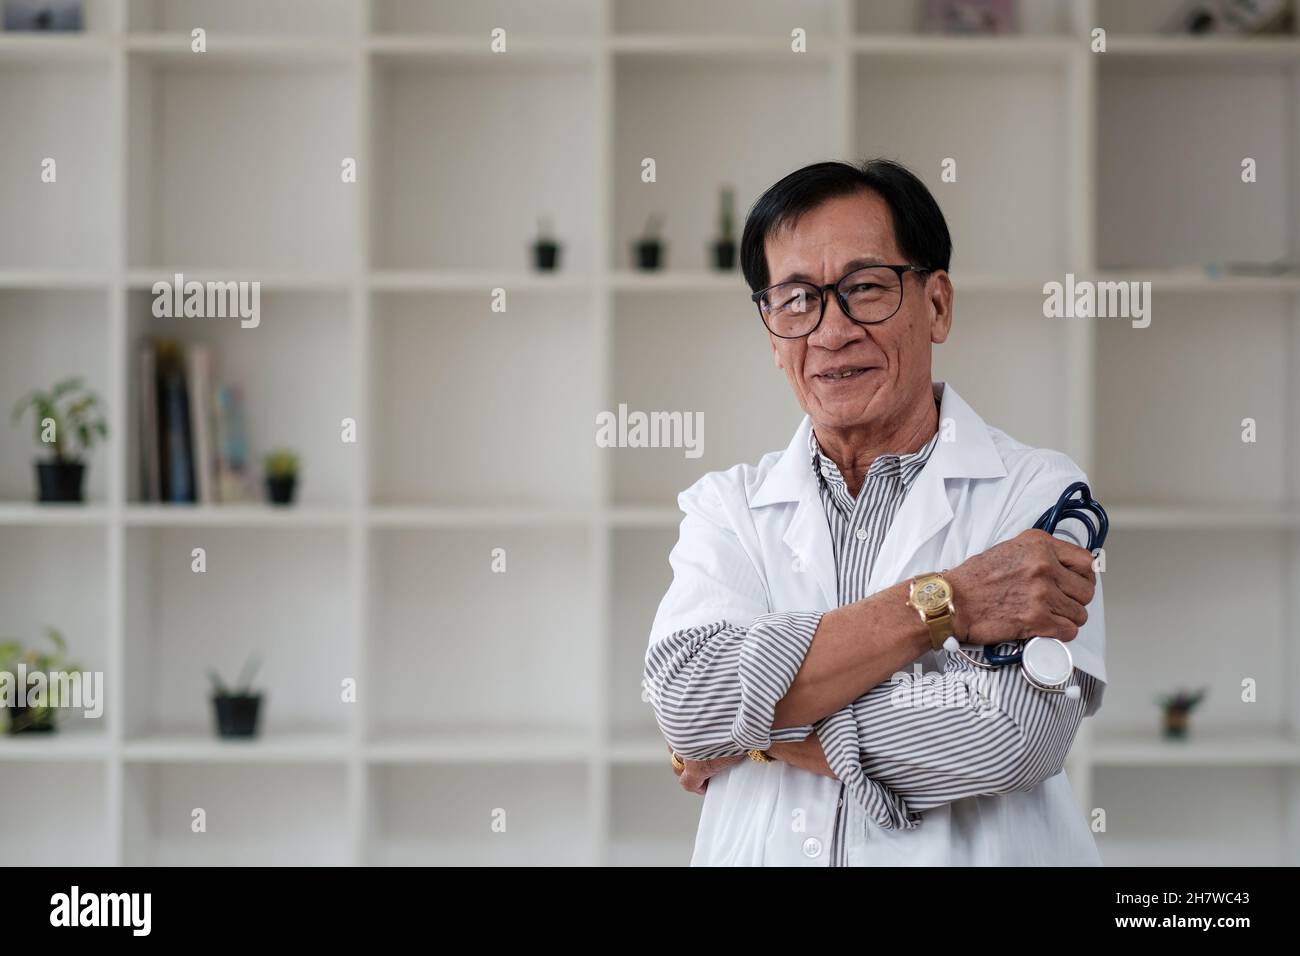 Retrato asian masculino Senior doctor hospital médico clínica médica atención de la salud. Foto de stock